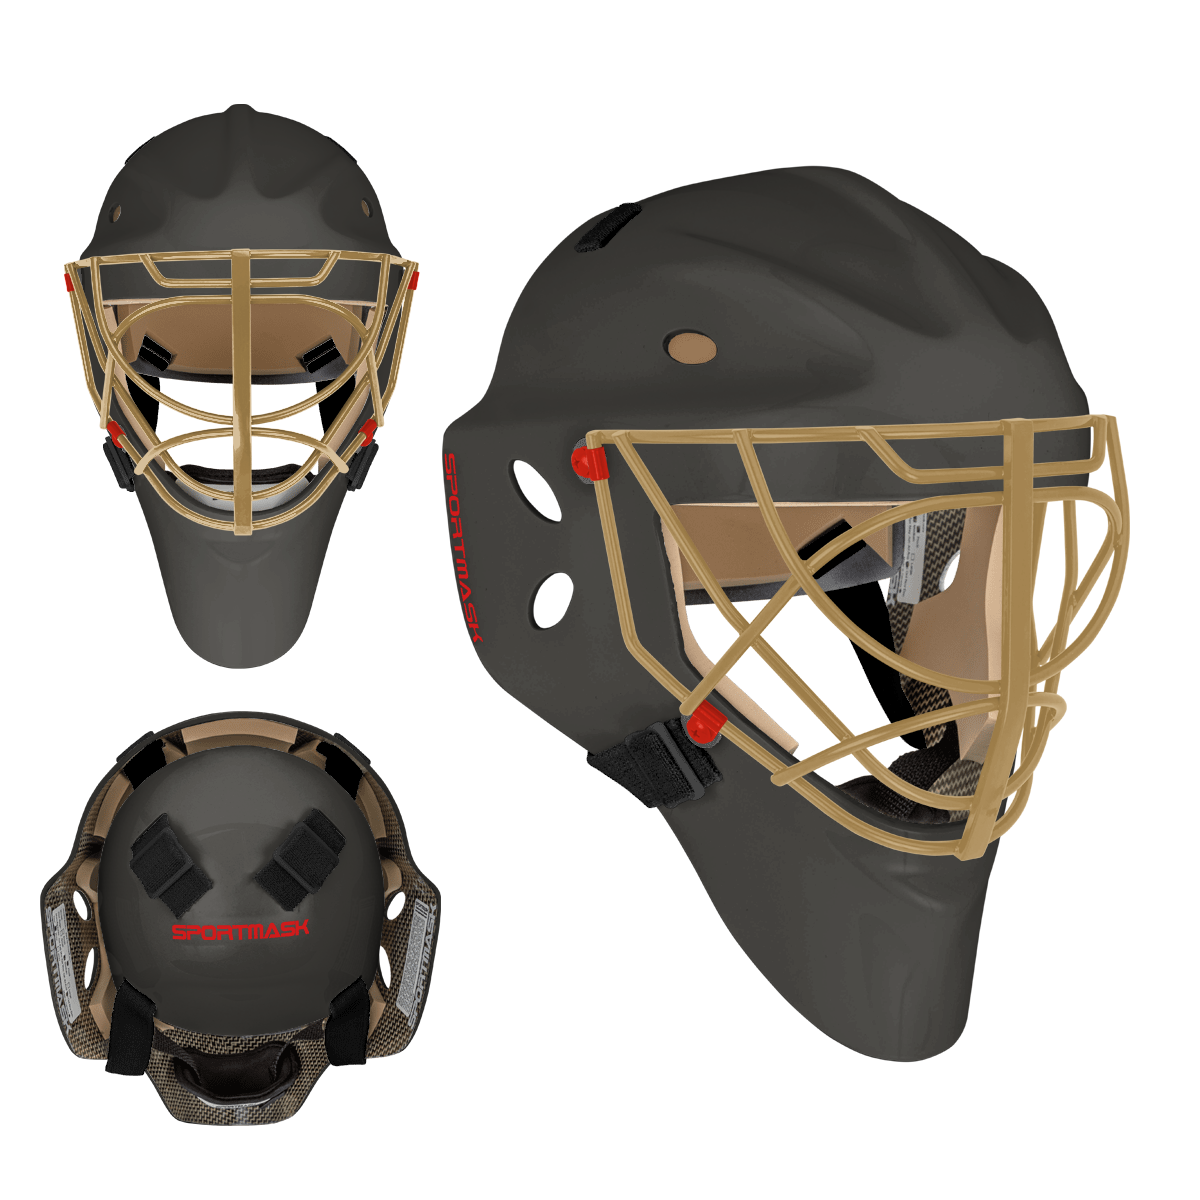 Sportmask Pro 3i Non-Certified Goalie Mask - Custom Design - Senior Vegas Inspiration